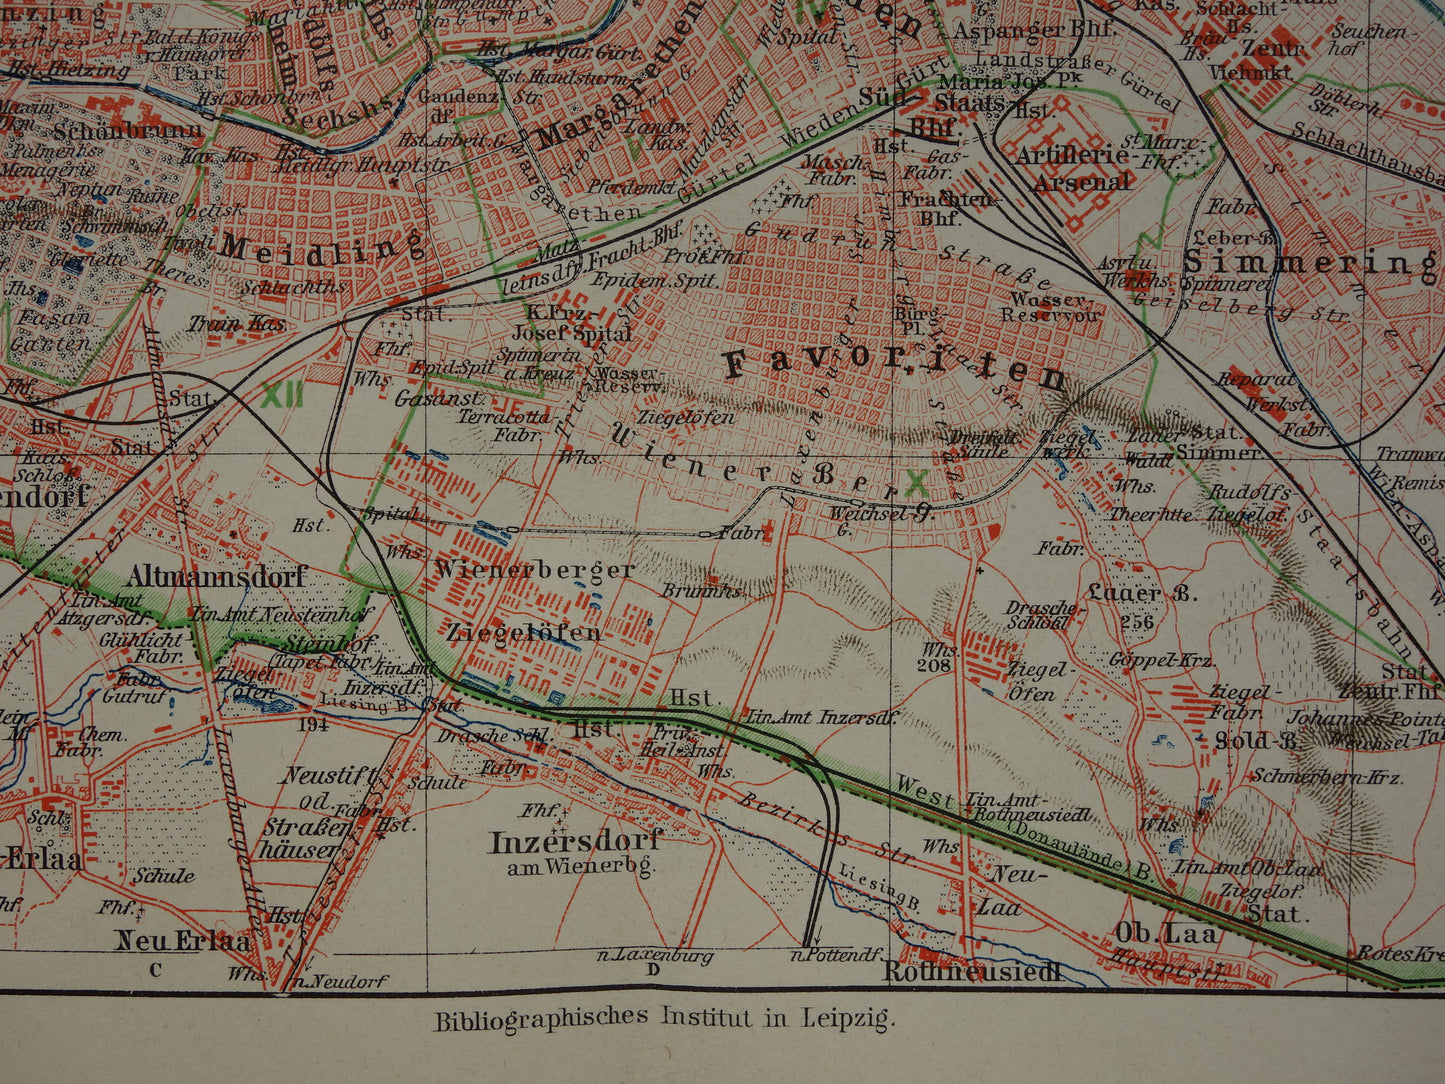 Wenen oude kaart van Wenen Oostenrijk uit 1905 originele antieke plattegrond vintage kaarten